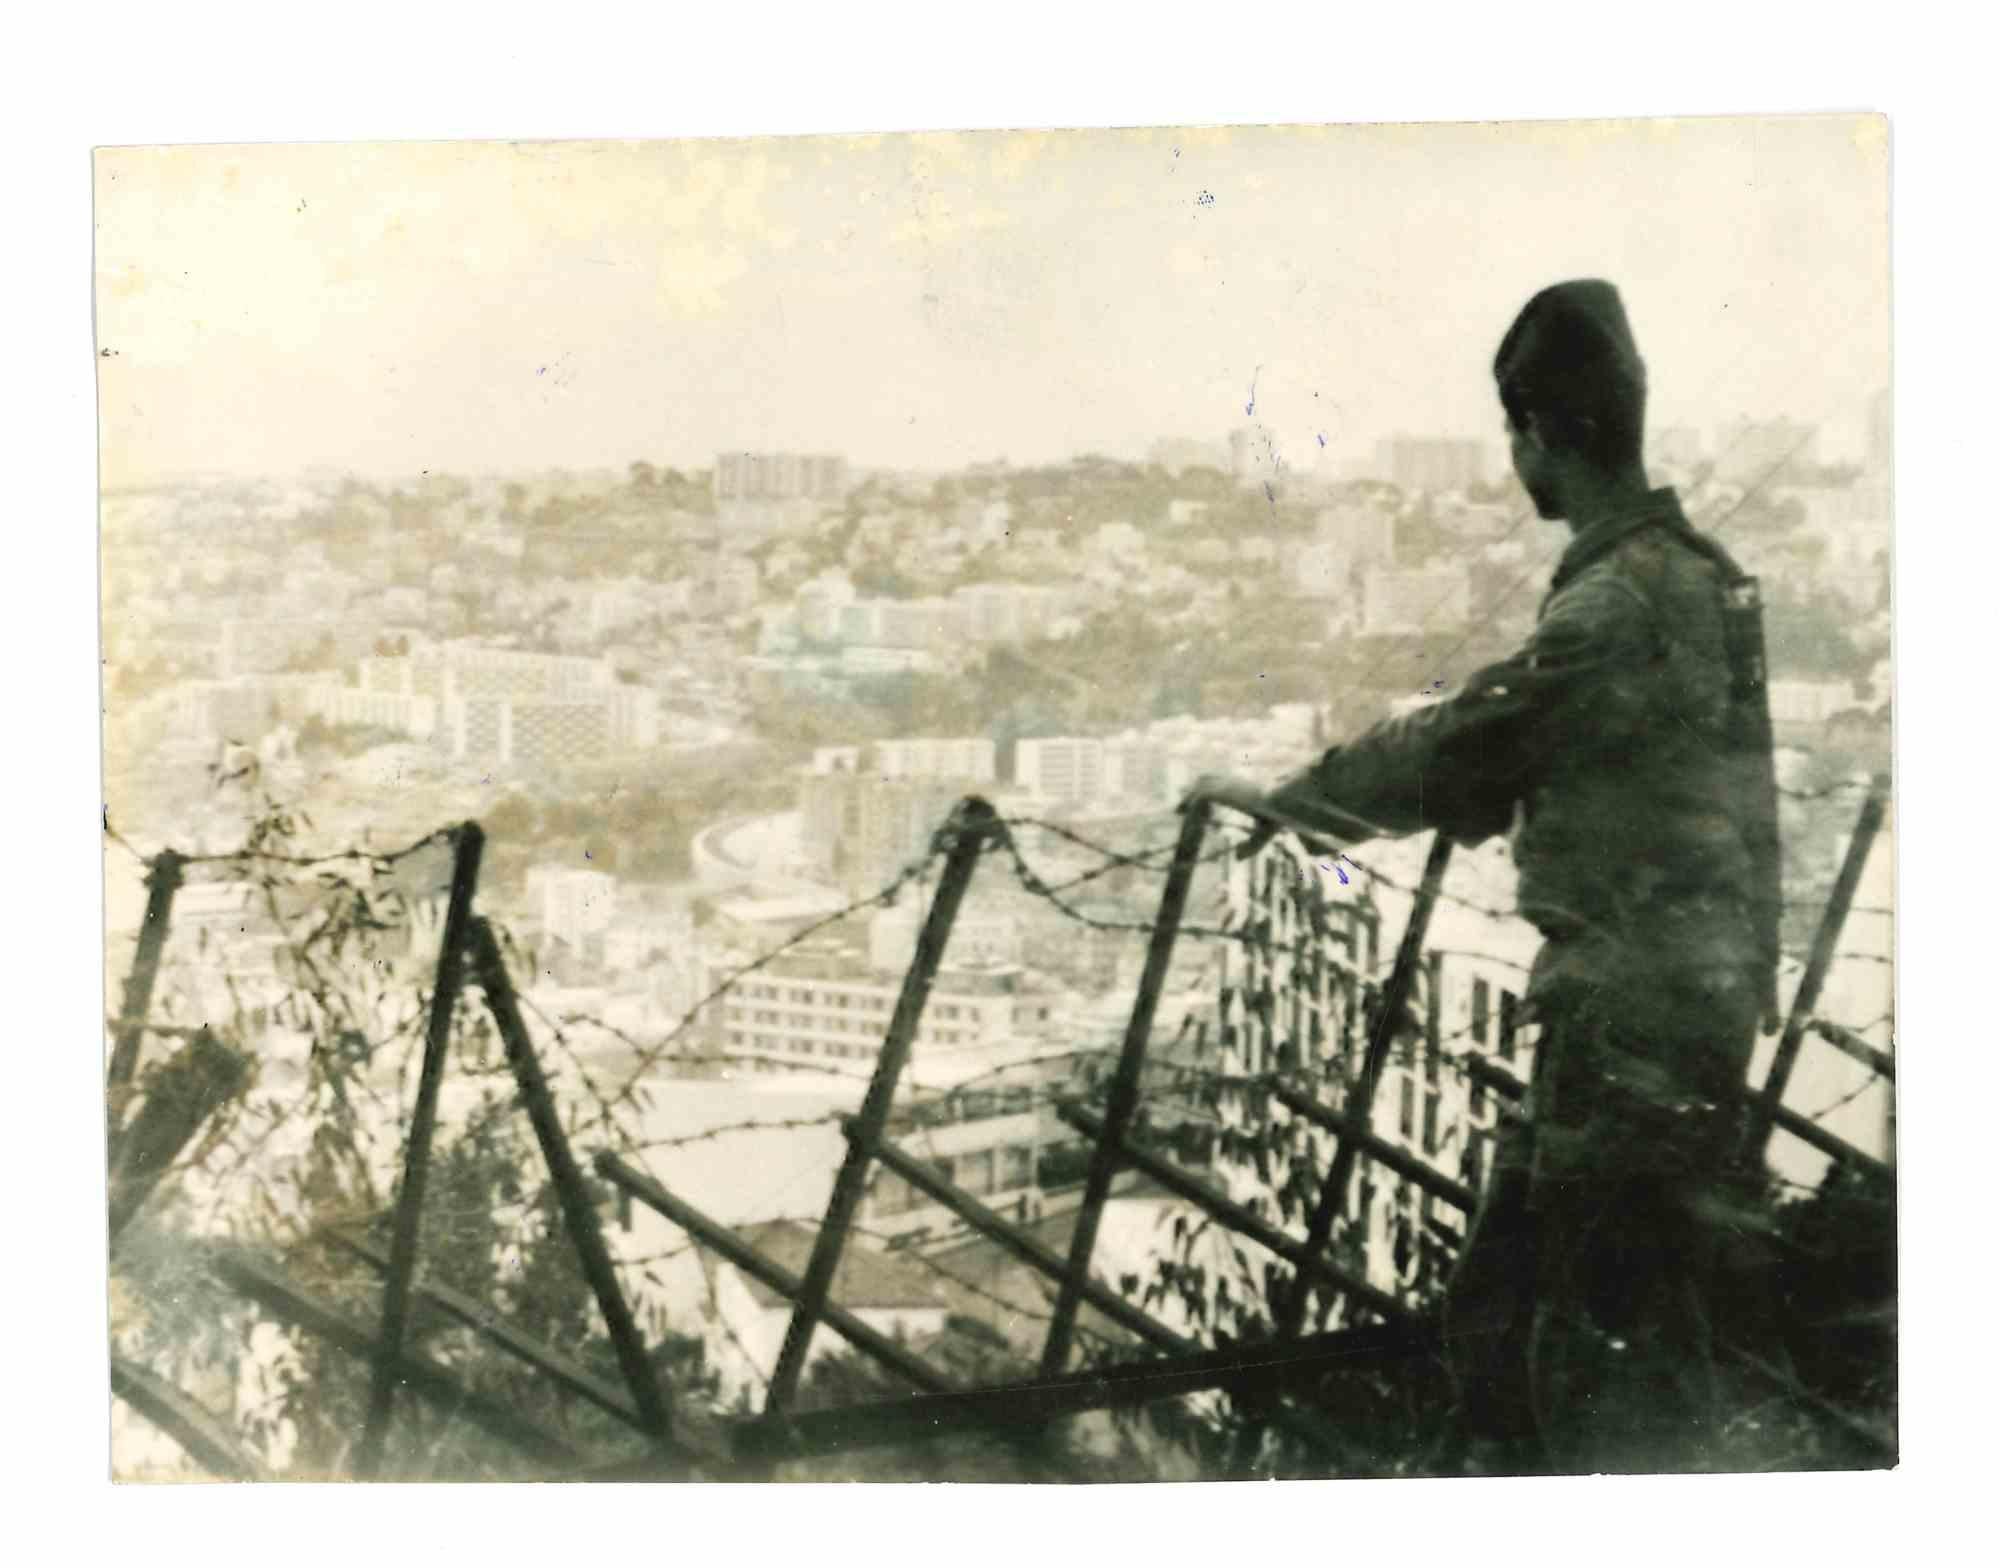 Unknown Figurative Photograph - War in Algeria  - Historical Photo - 1960s